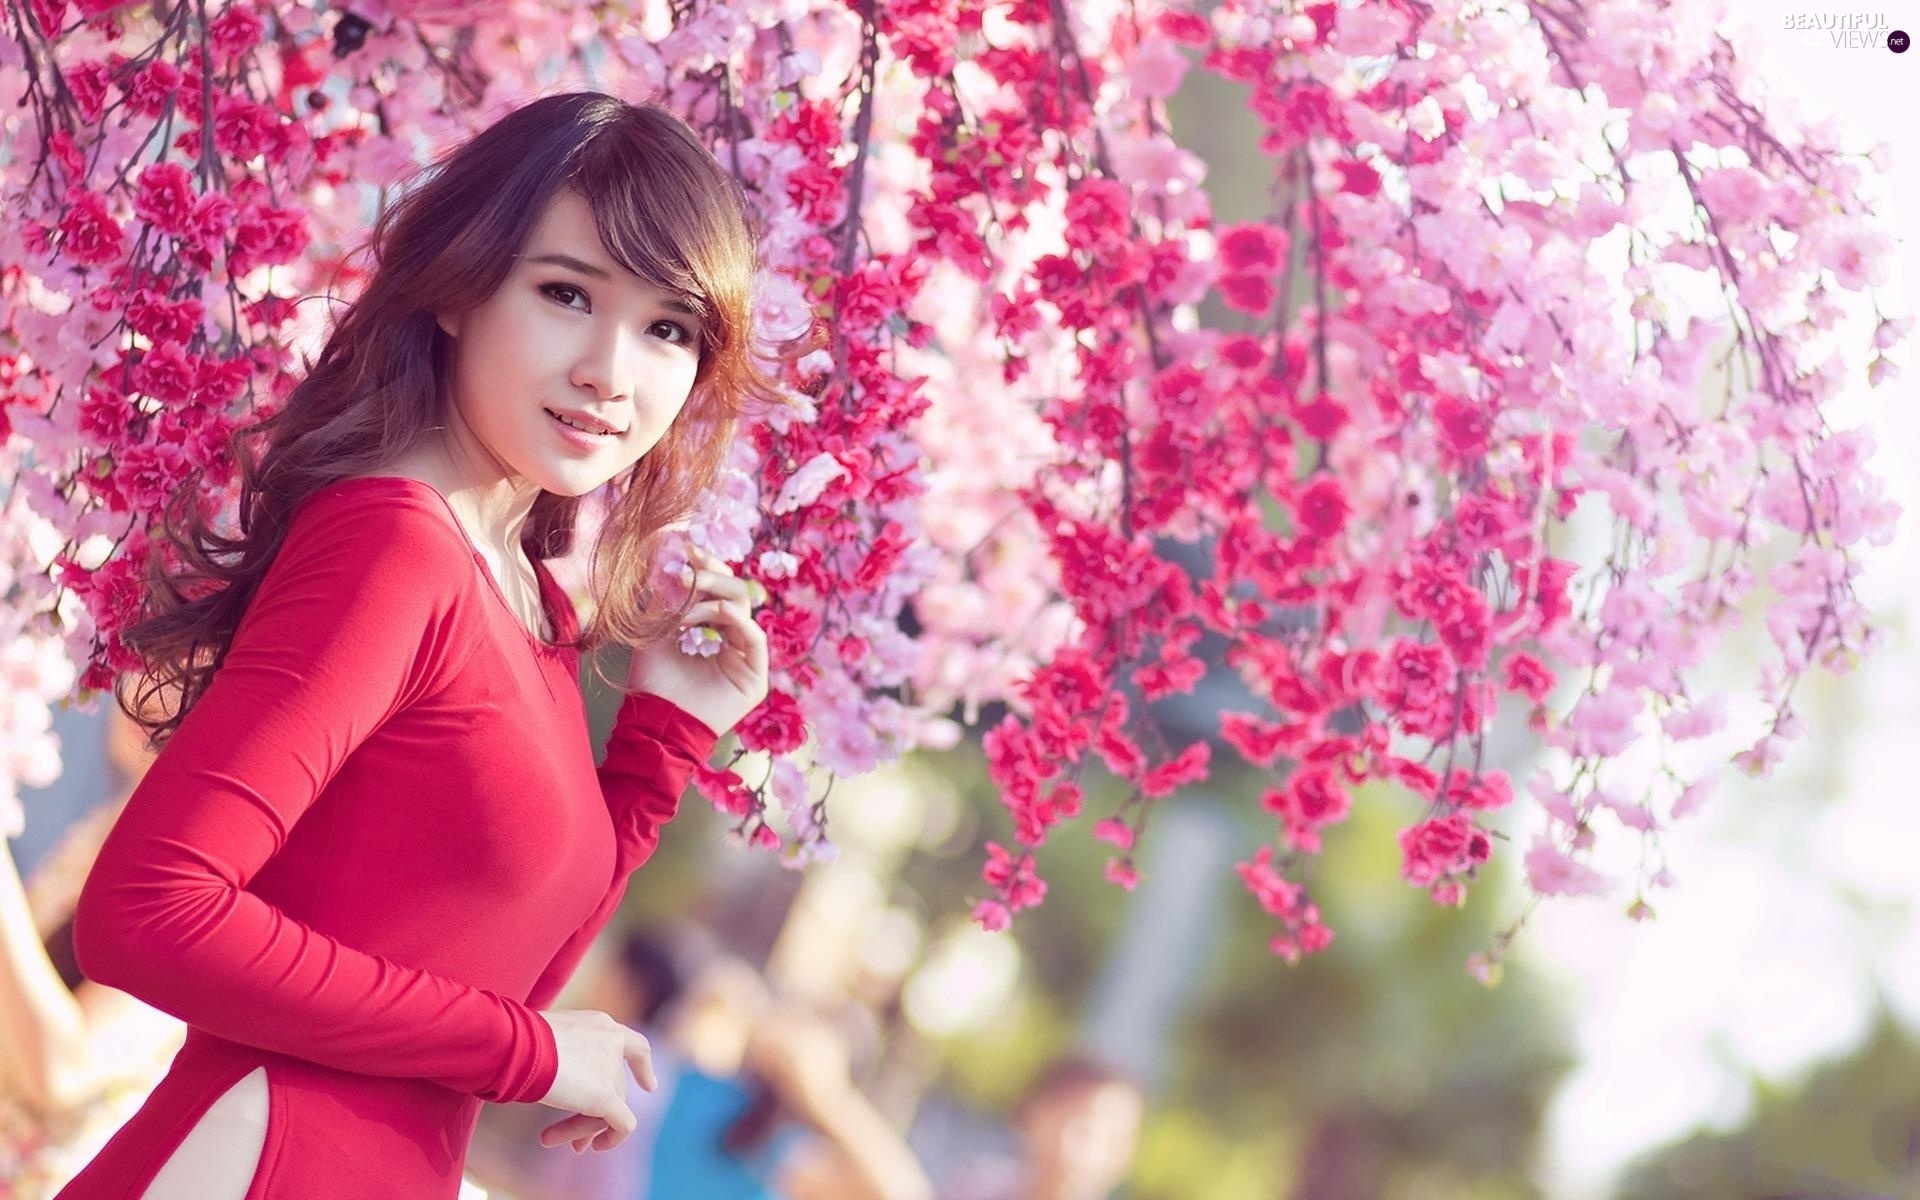 ragazza giapponese hd wallpaper,rosa,primavera,bellezza,fiorire,fiore